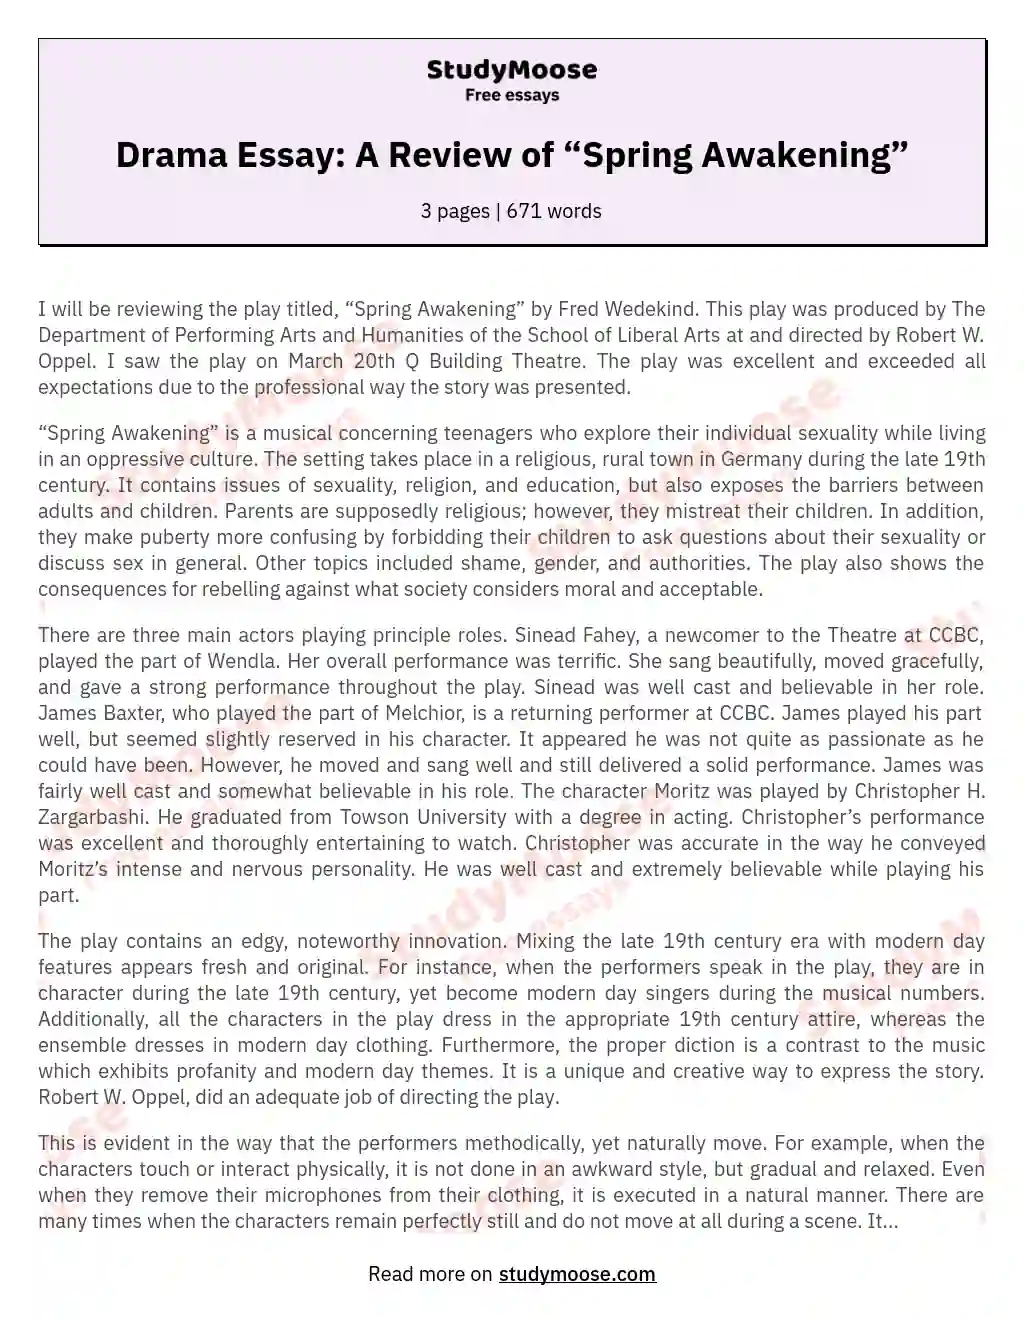 Drama Essay: A Review of “Spring Awakening” essay